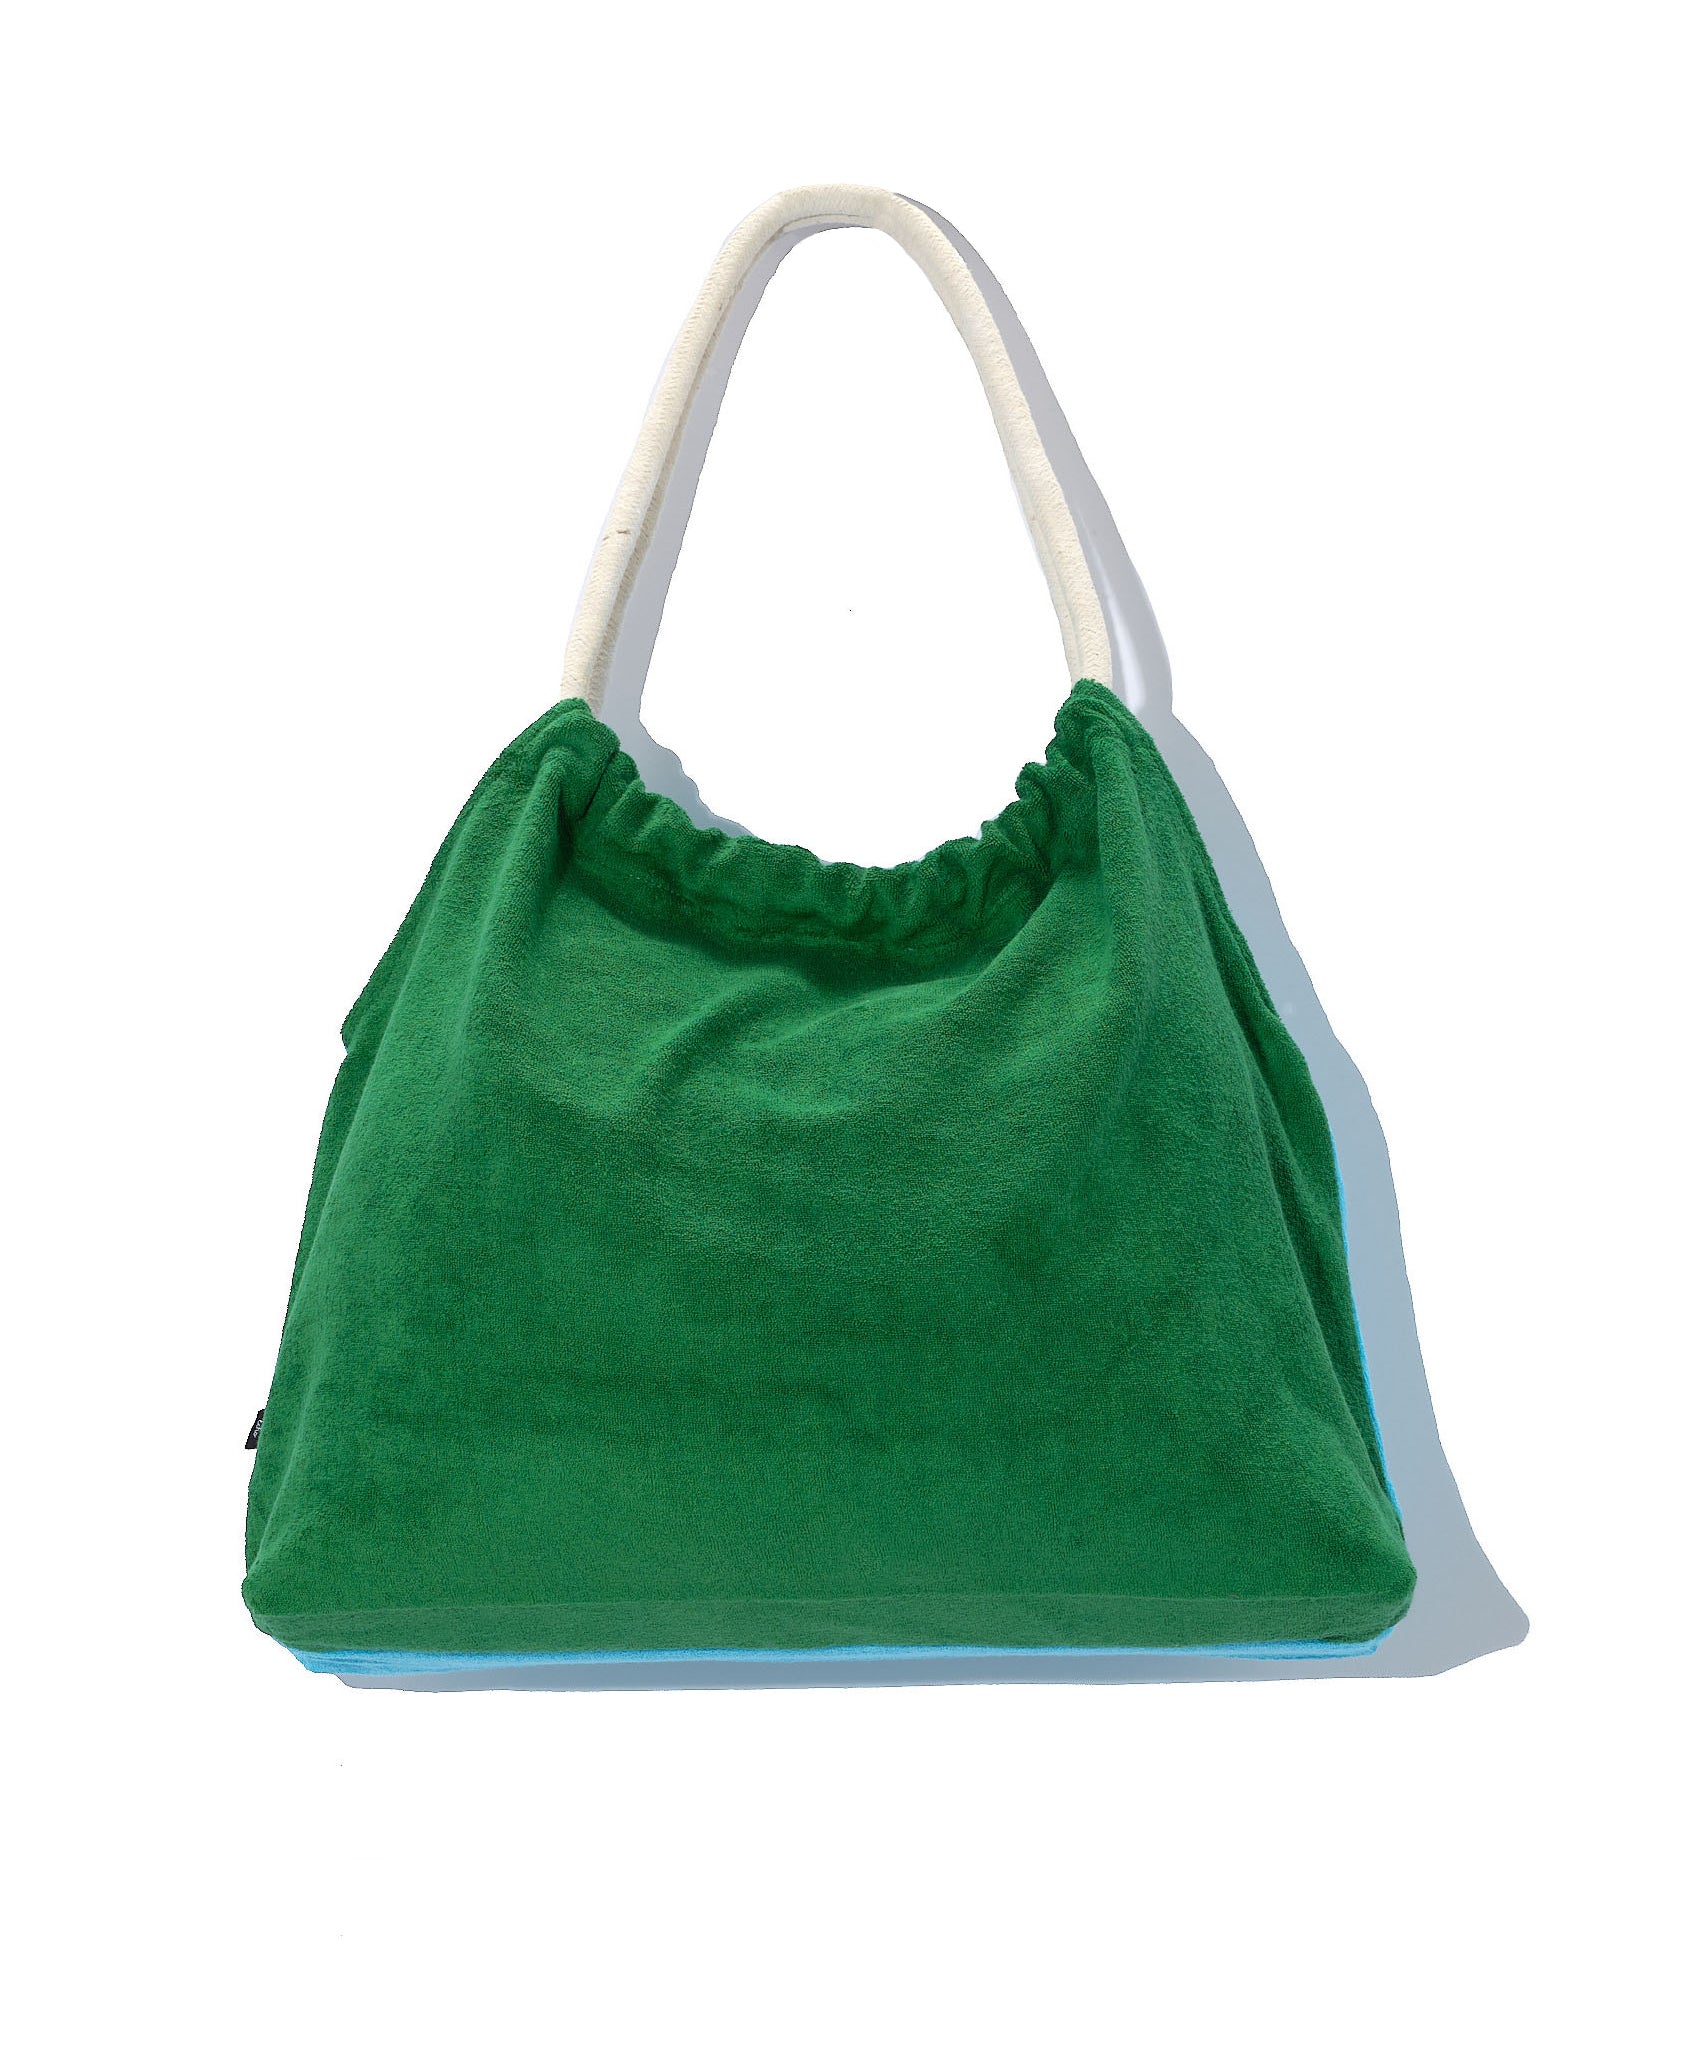 Terry Cloth Bag